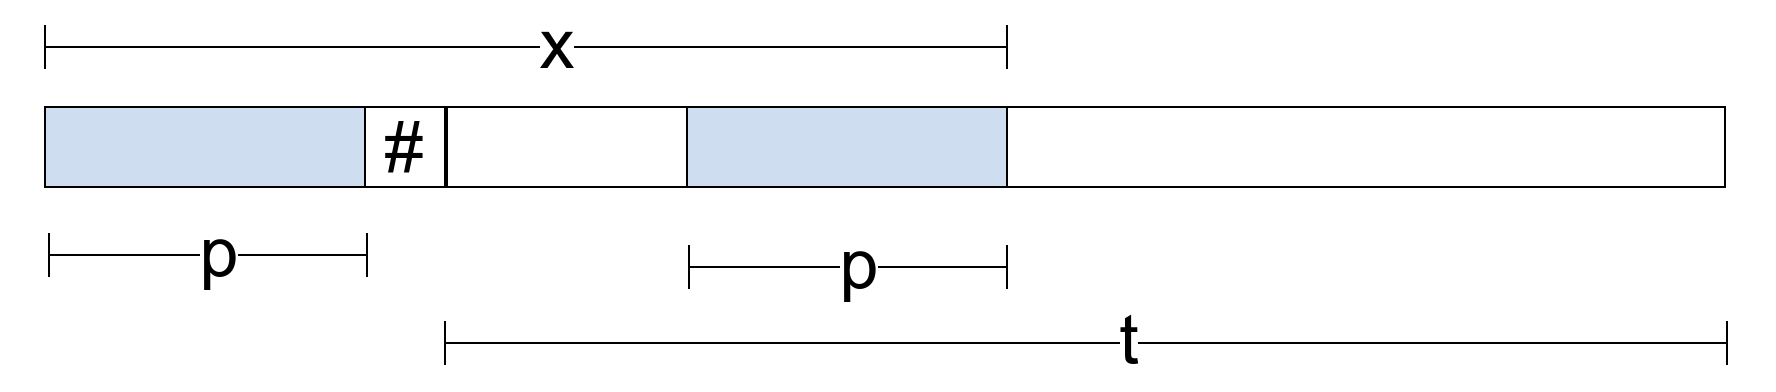 Slika 4: Prefiks-sufiks dužine m=|p| prefiksa x niske p\#t odgovara pojavljivanju prefiksa p u tekstu t.